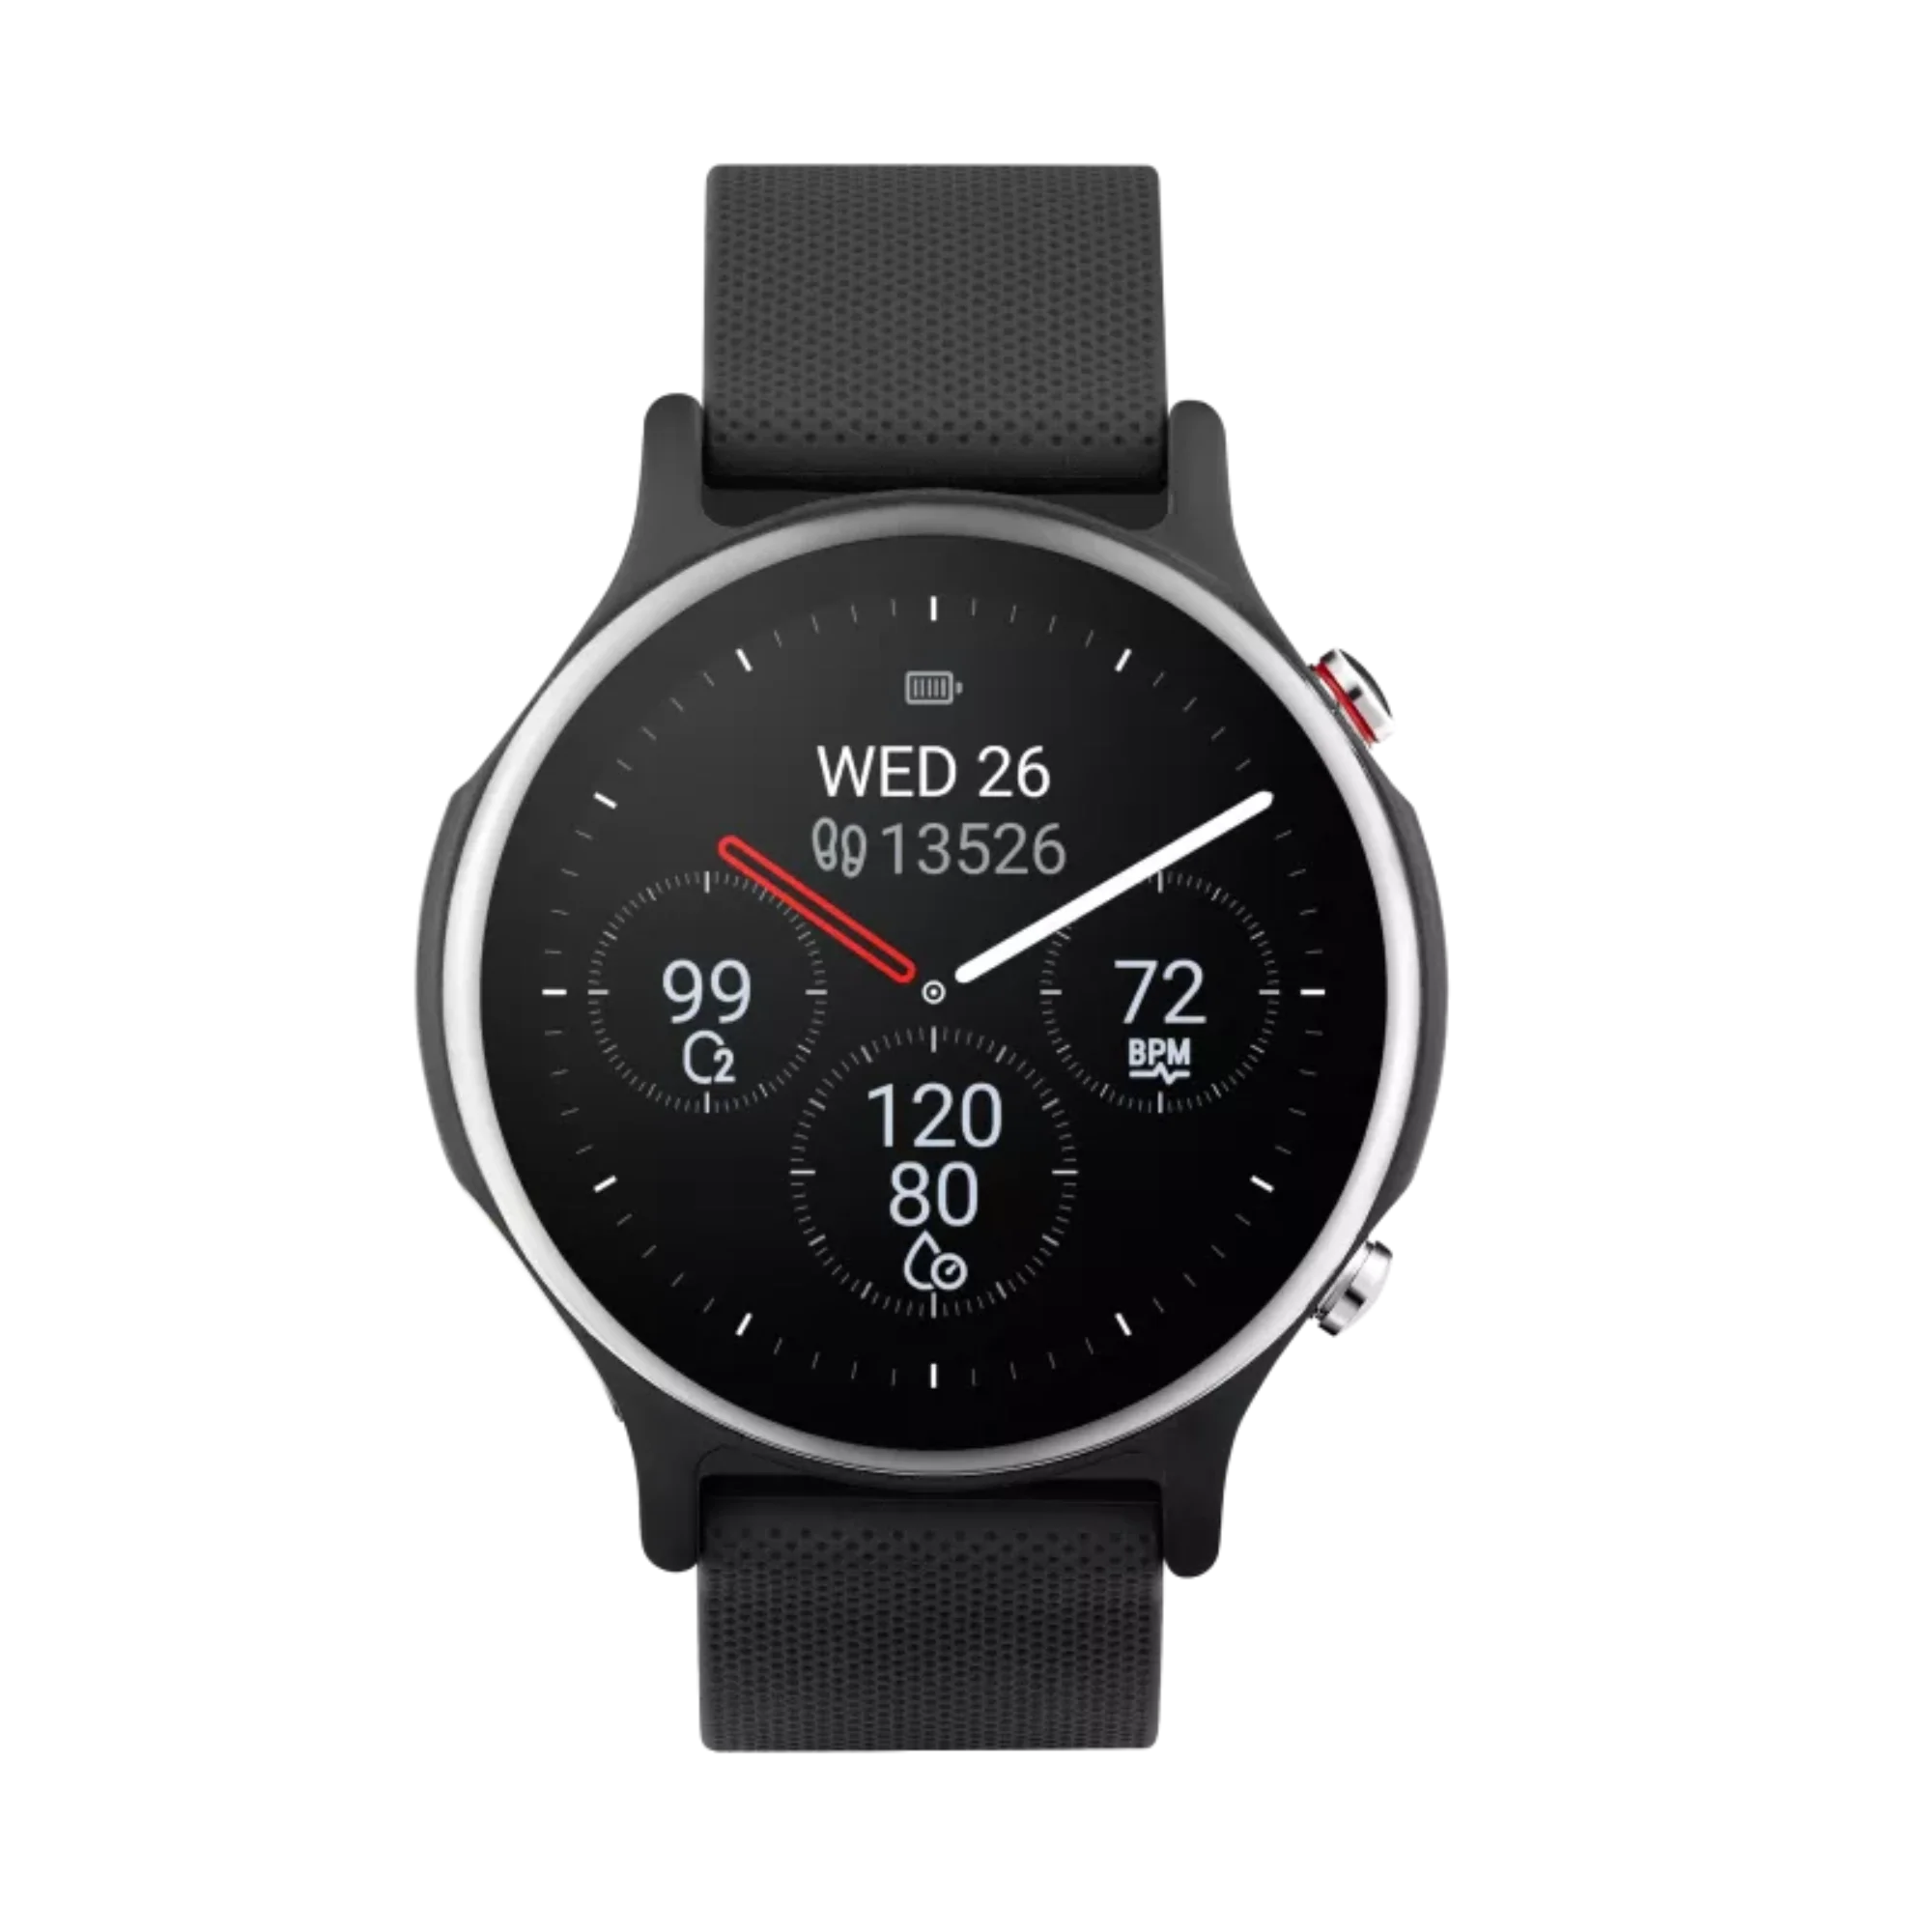 Foto: Smartwatch Asus VivoWatch 6